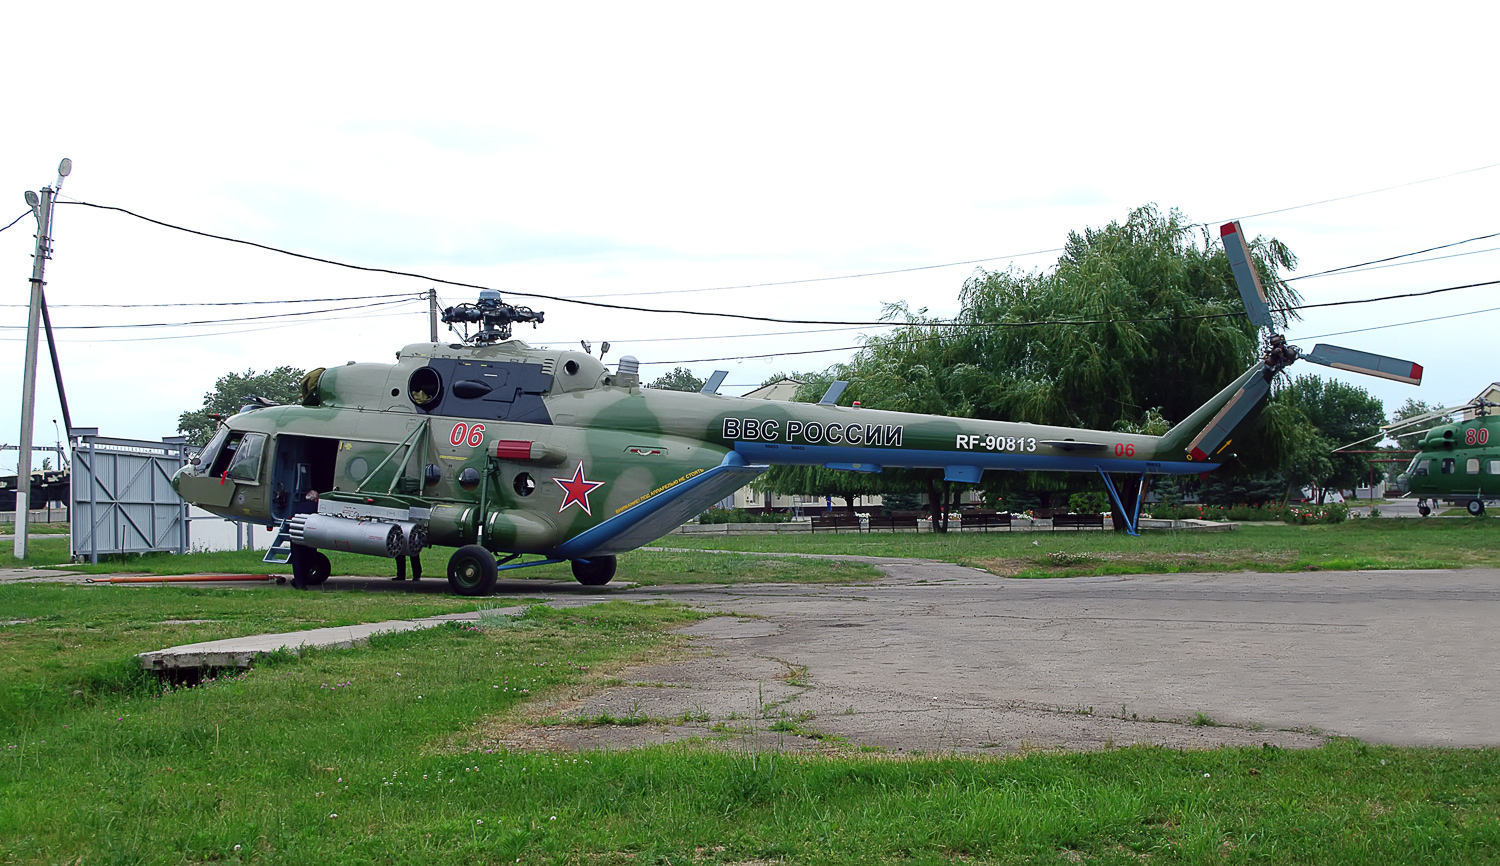 Mi-8MTV-5-1   RF-90813